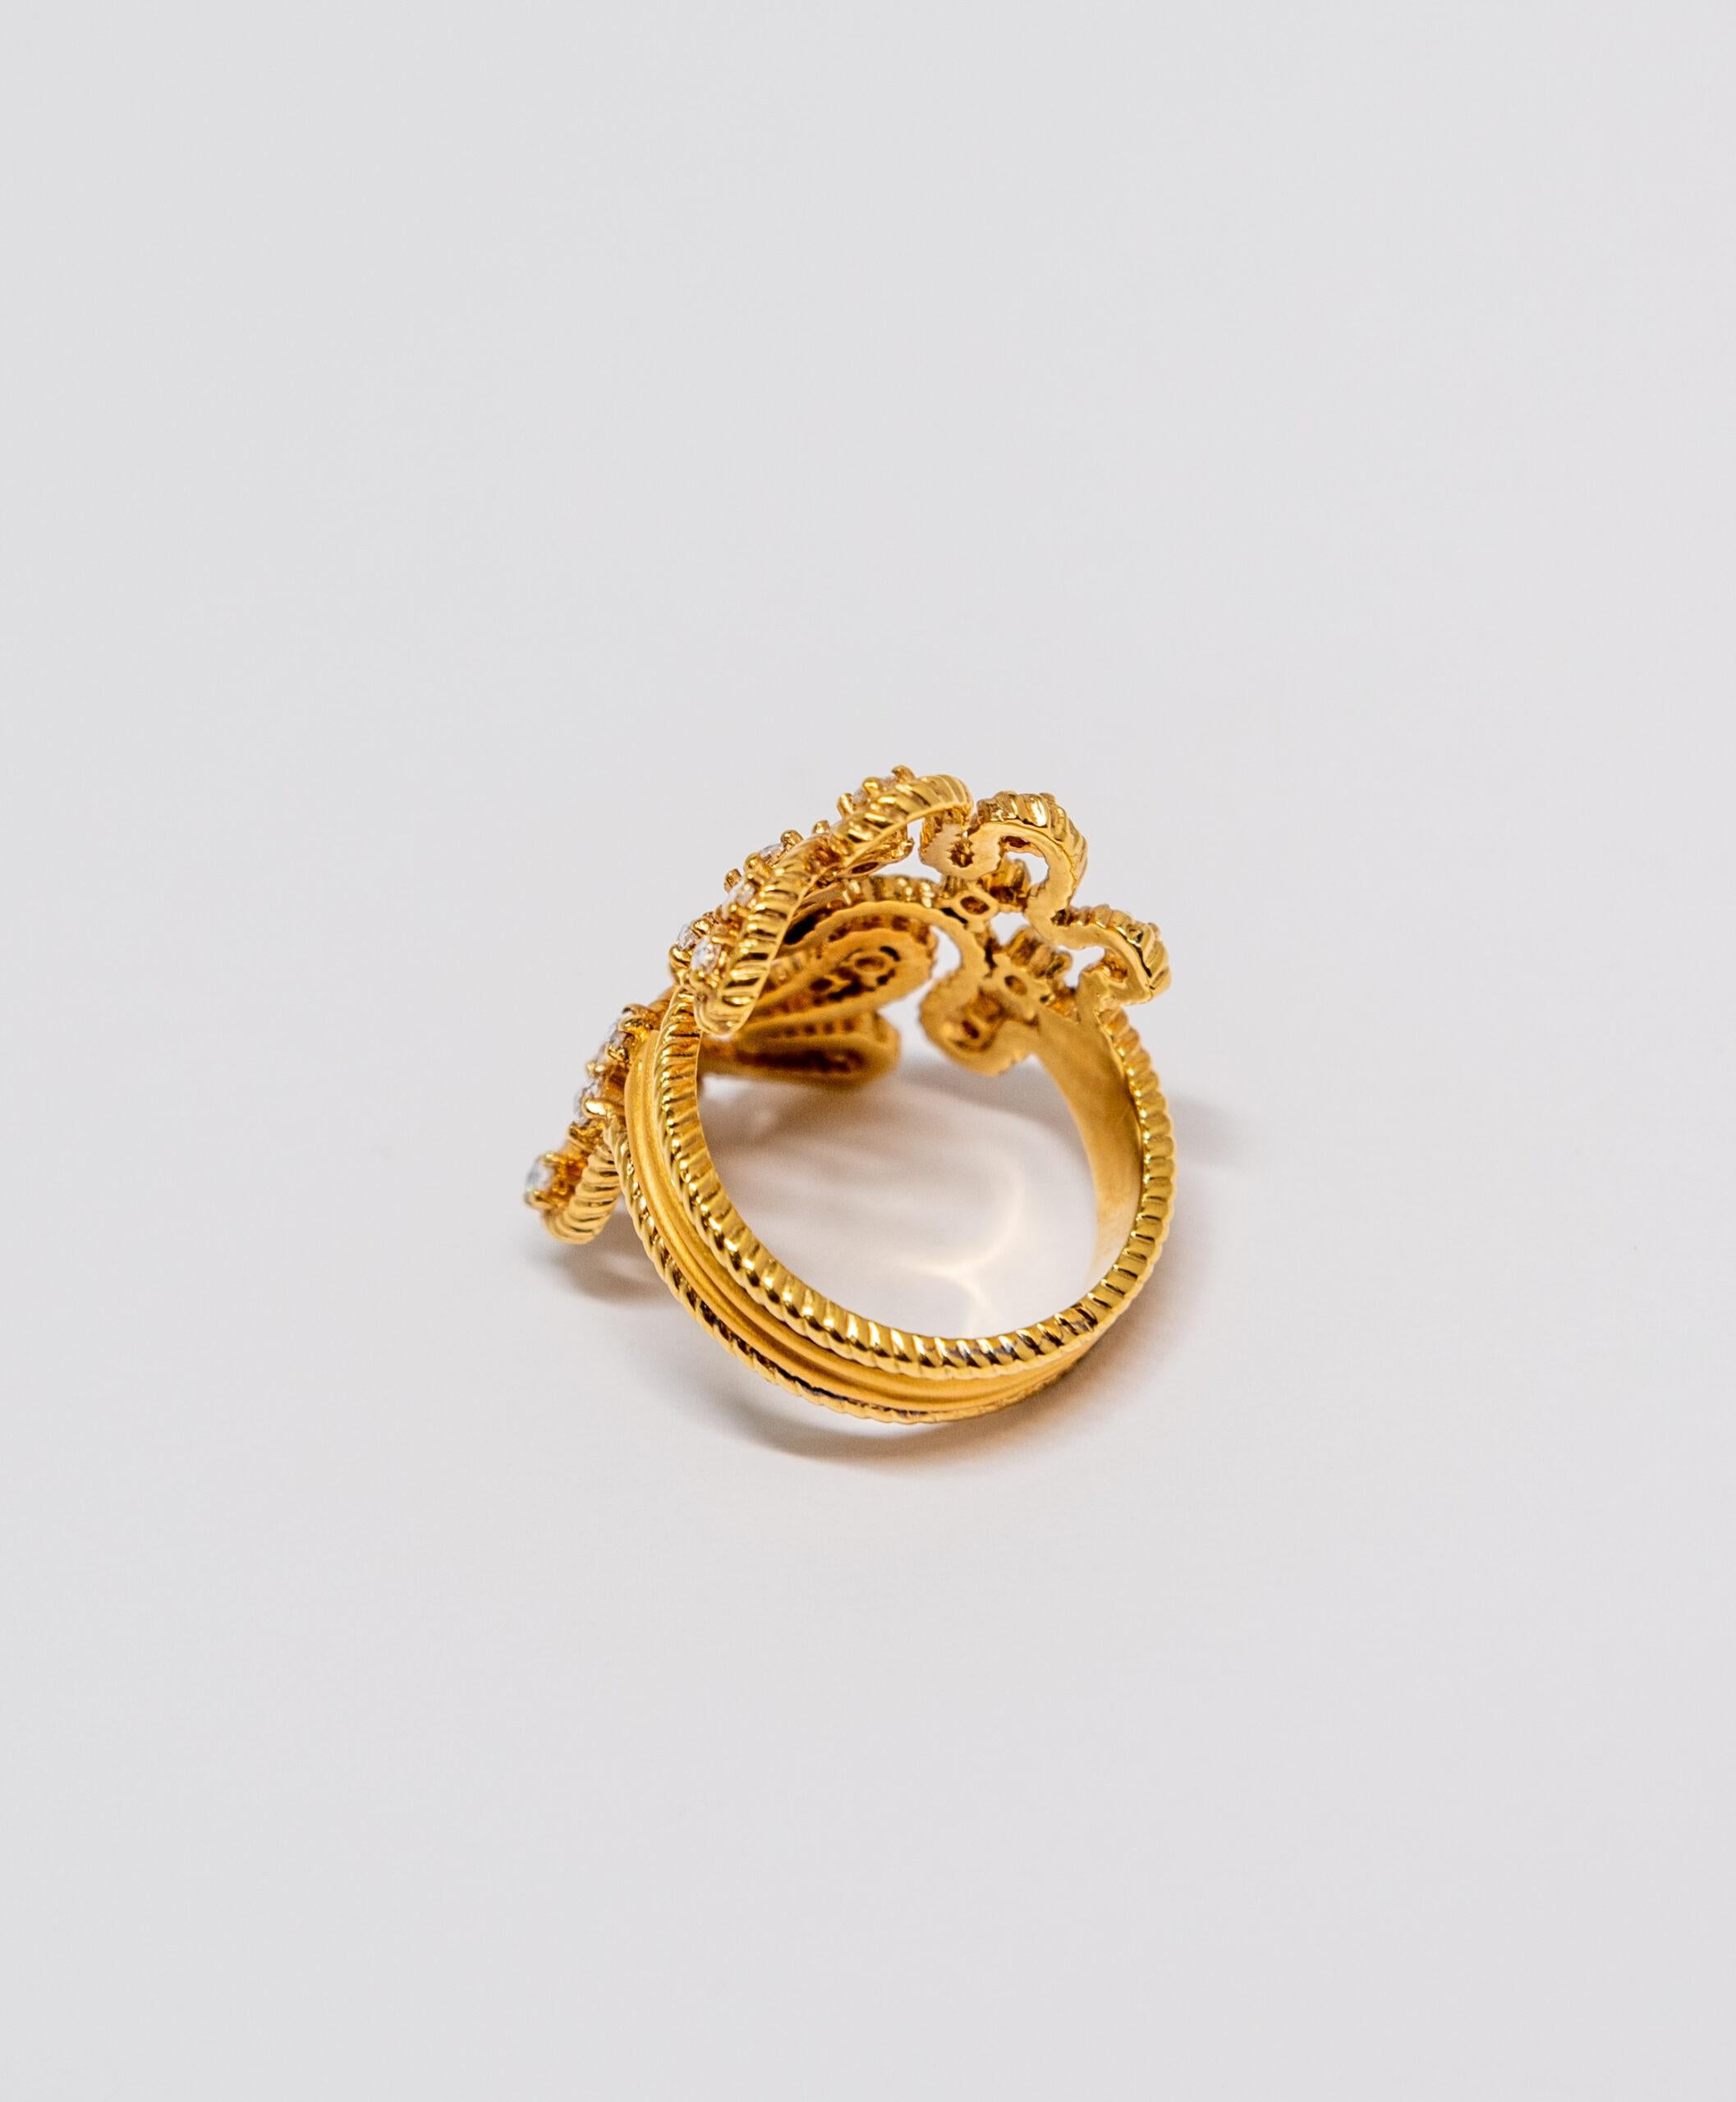 Carrera y Carrera Ruedo 18 Karat Yellow Gold & Diamonds Ring, 10076488 In New Condition For Sale In North Miami Beach, FL